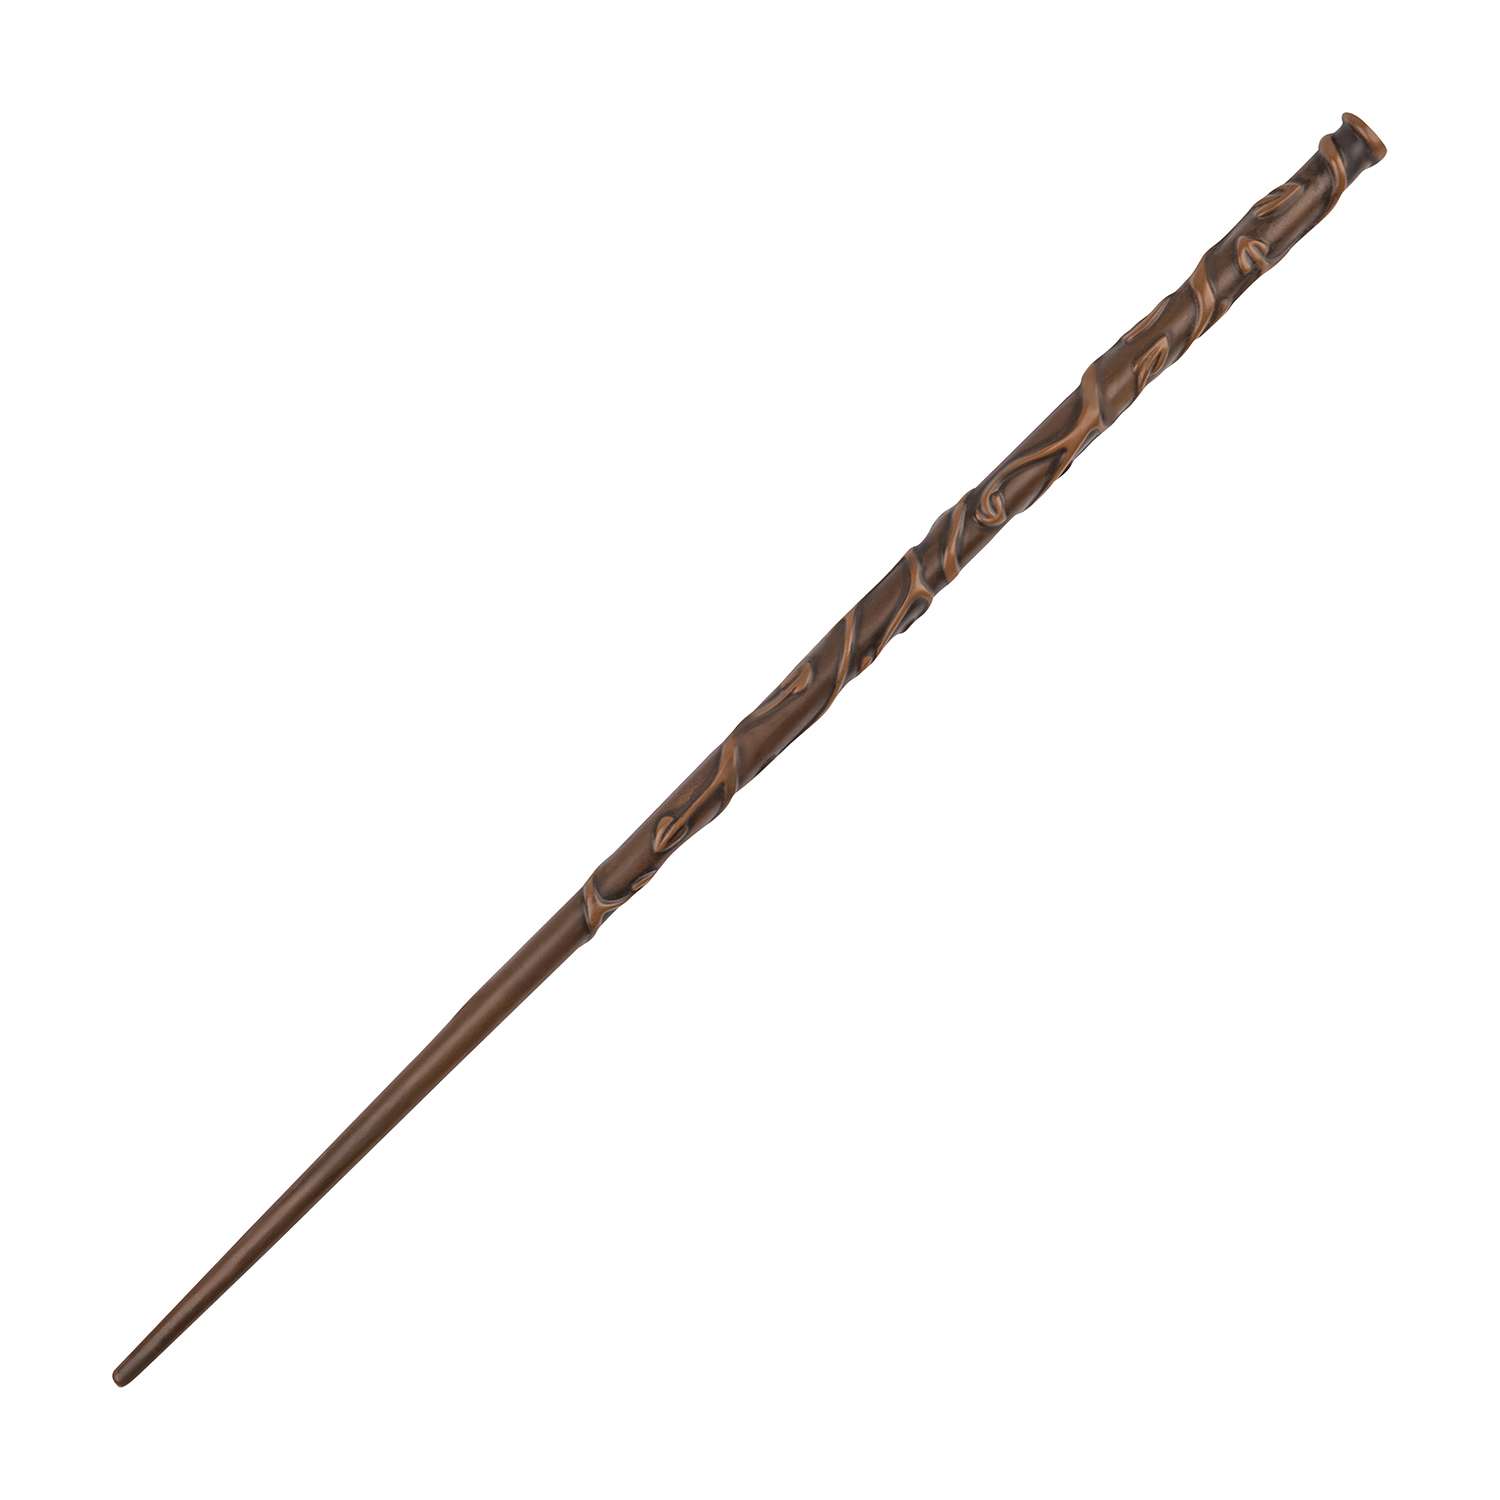 Ручка Harry Potter в виде палочки Гермионы Грейнджер 37 см из Гарри Поттера - фото 2